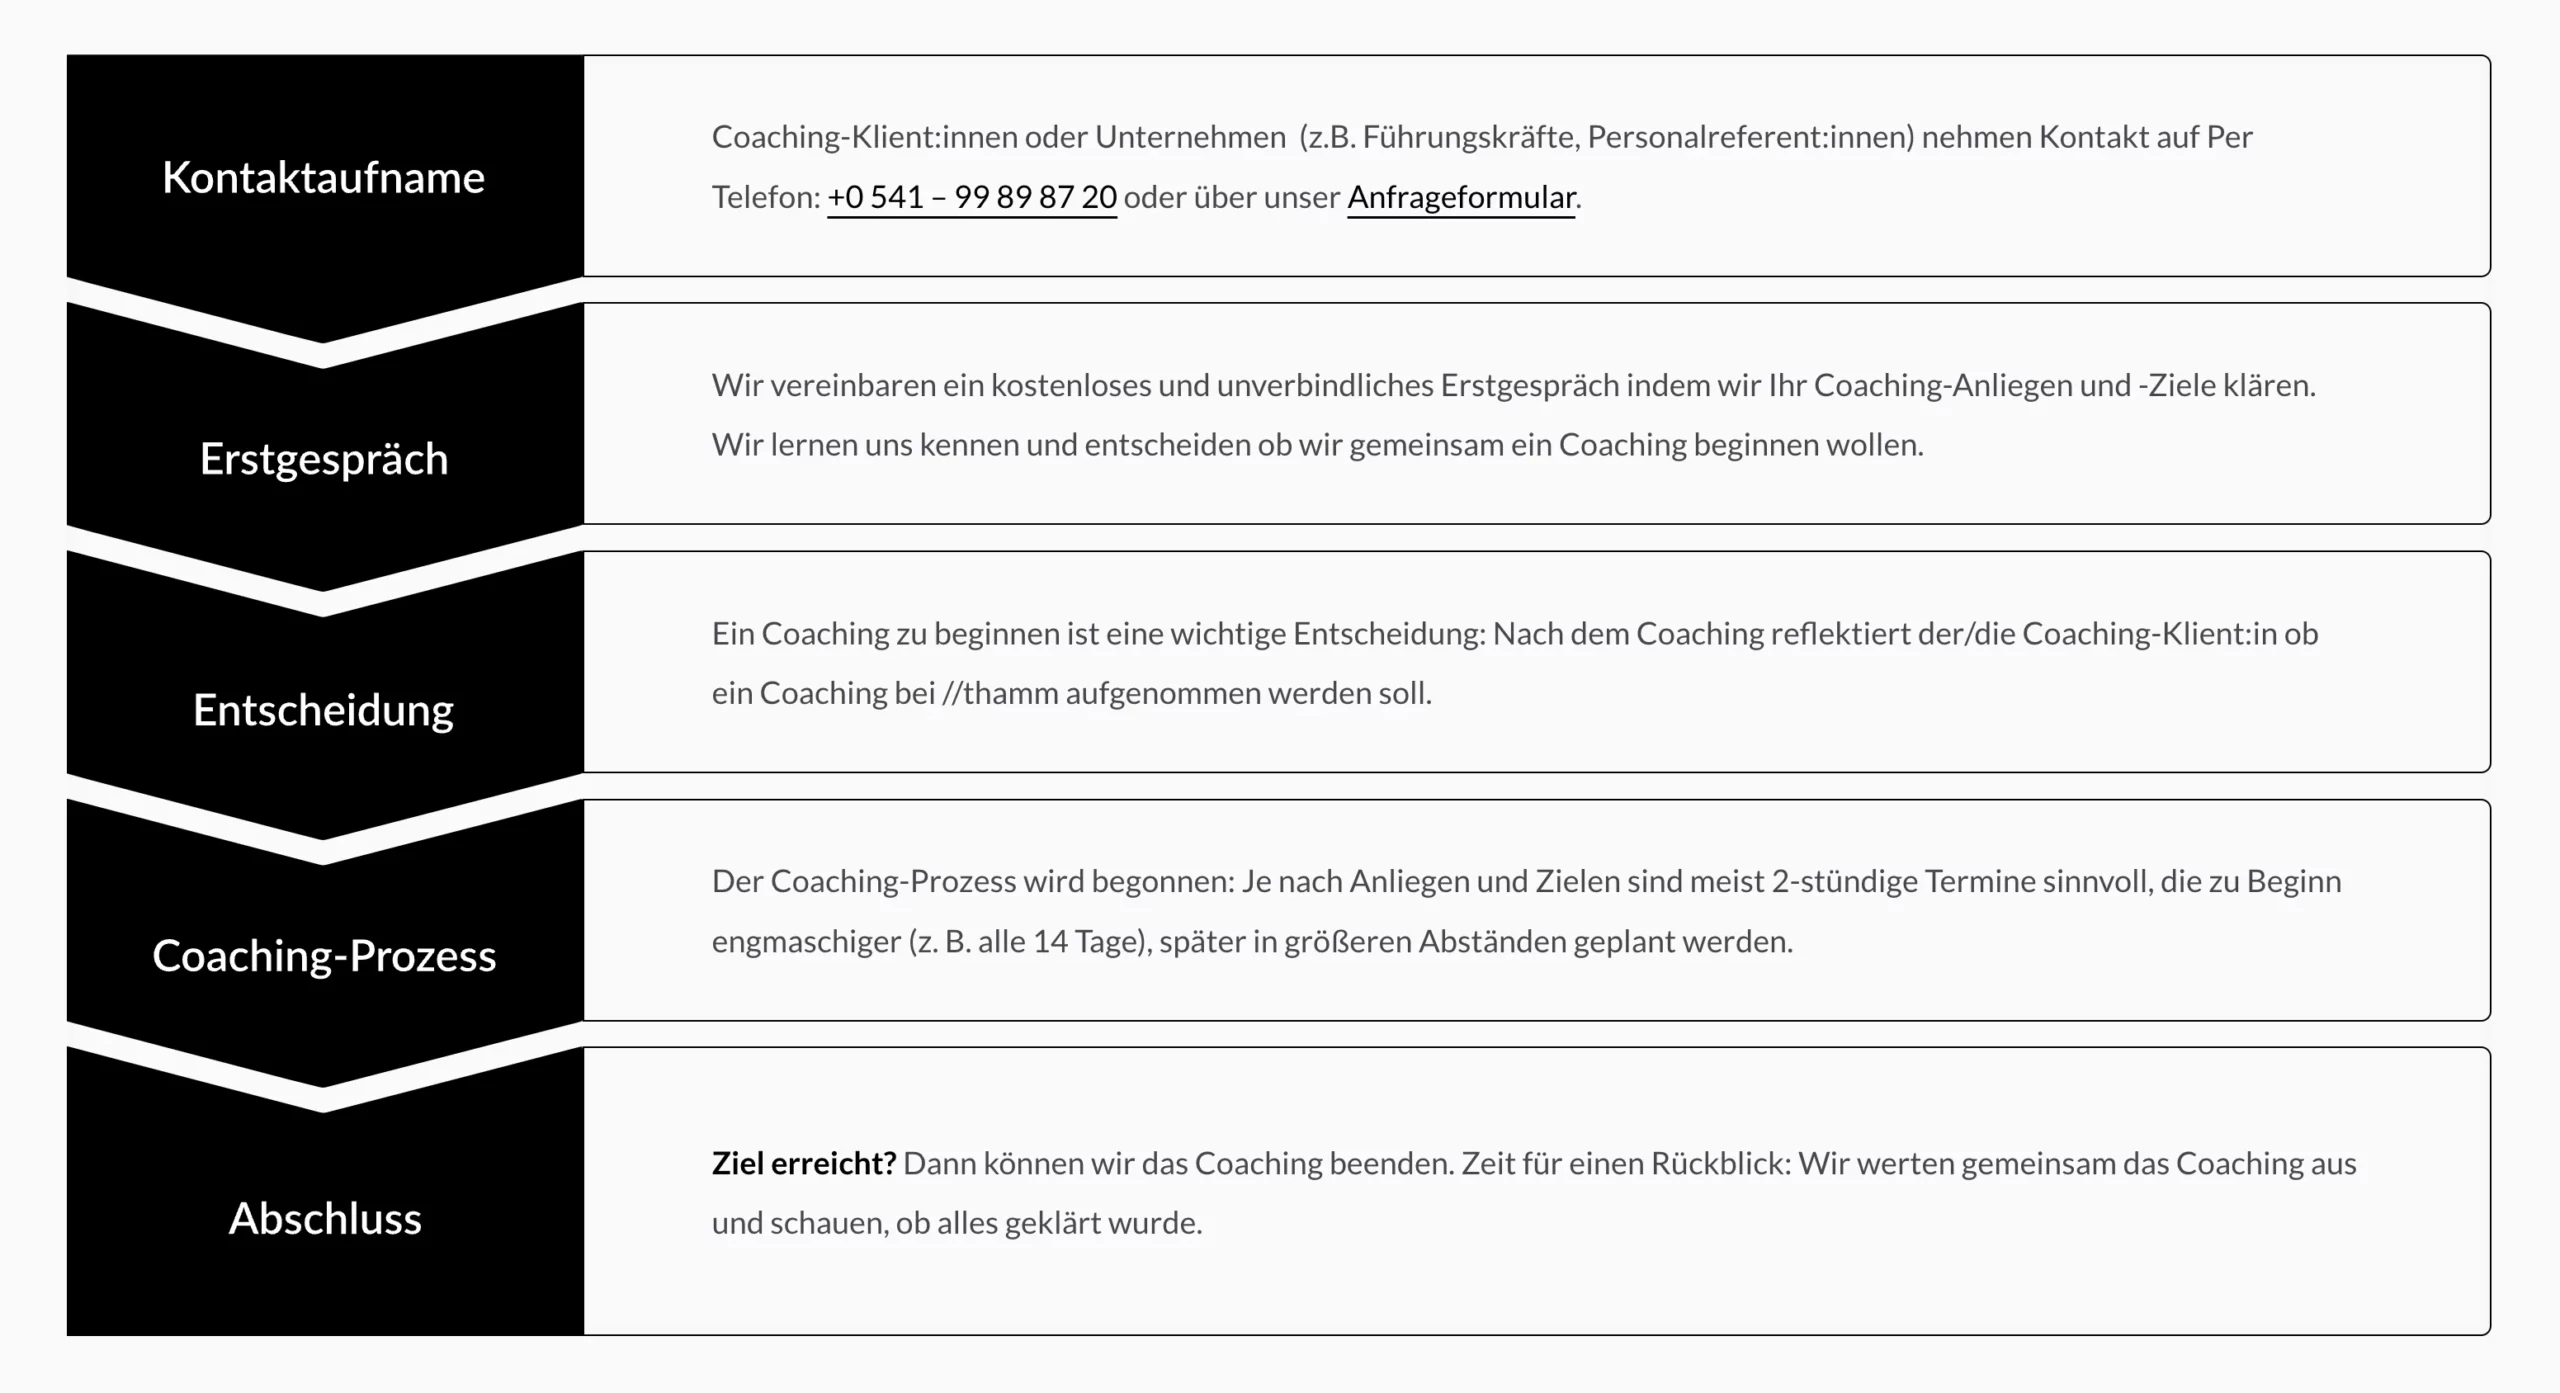 Grafik für den Ablauf eines Coachings. Von der Kontaktaufnahme bis zum Abschluss des Coachings.